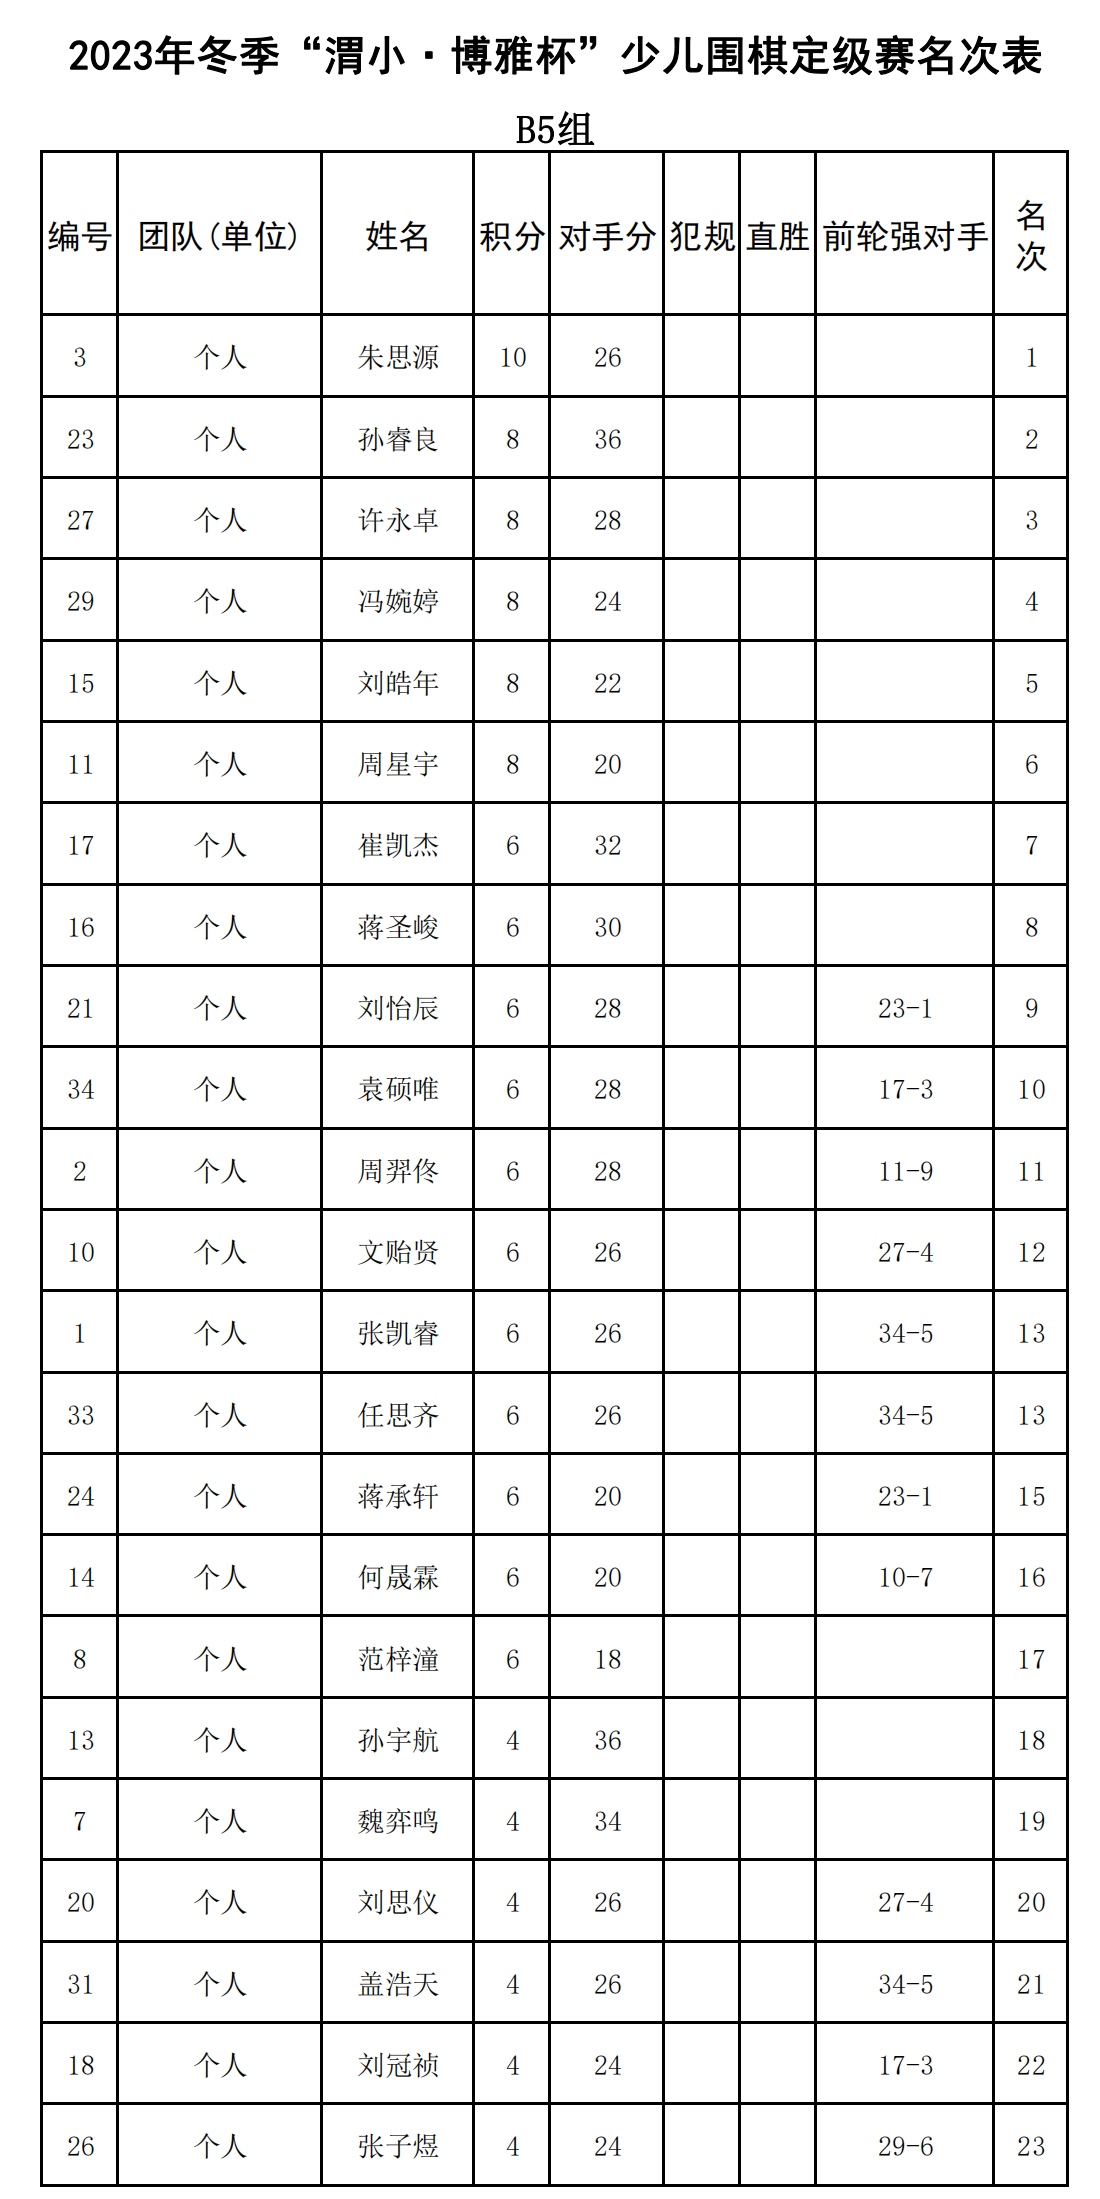 2023年冬季“渭小·博雅杯”少儿围棋定级赛B5组(名次表)_00.png